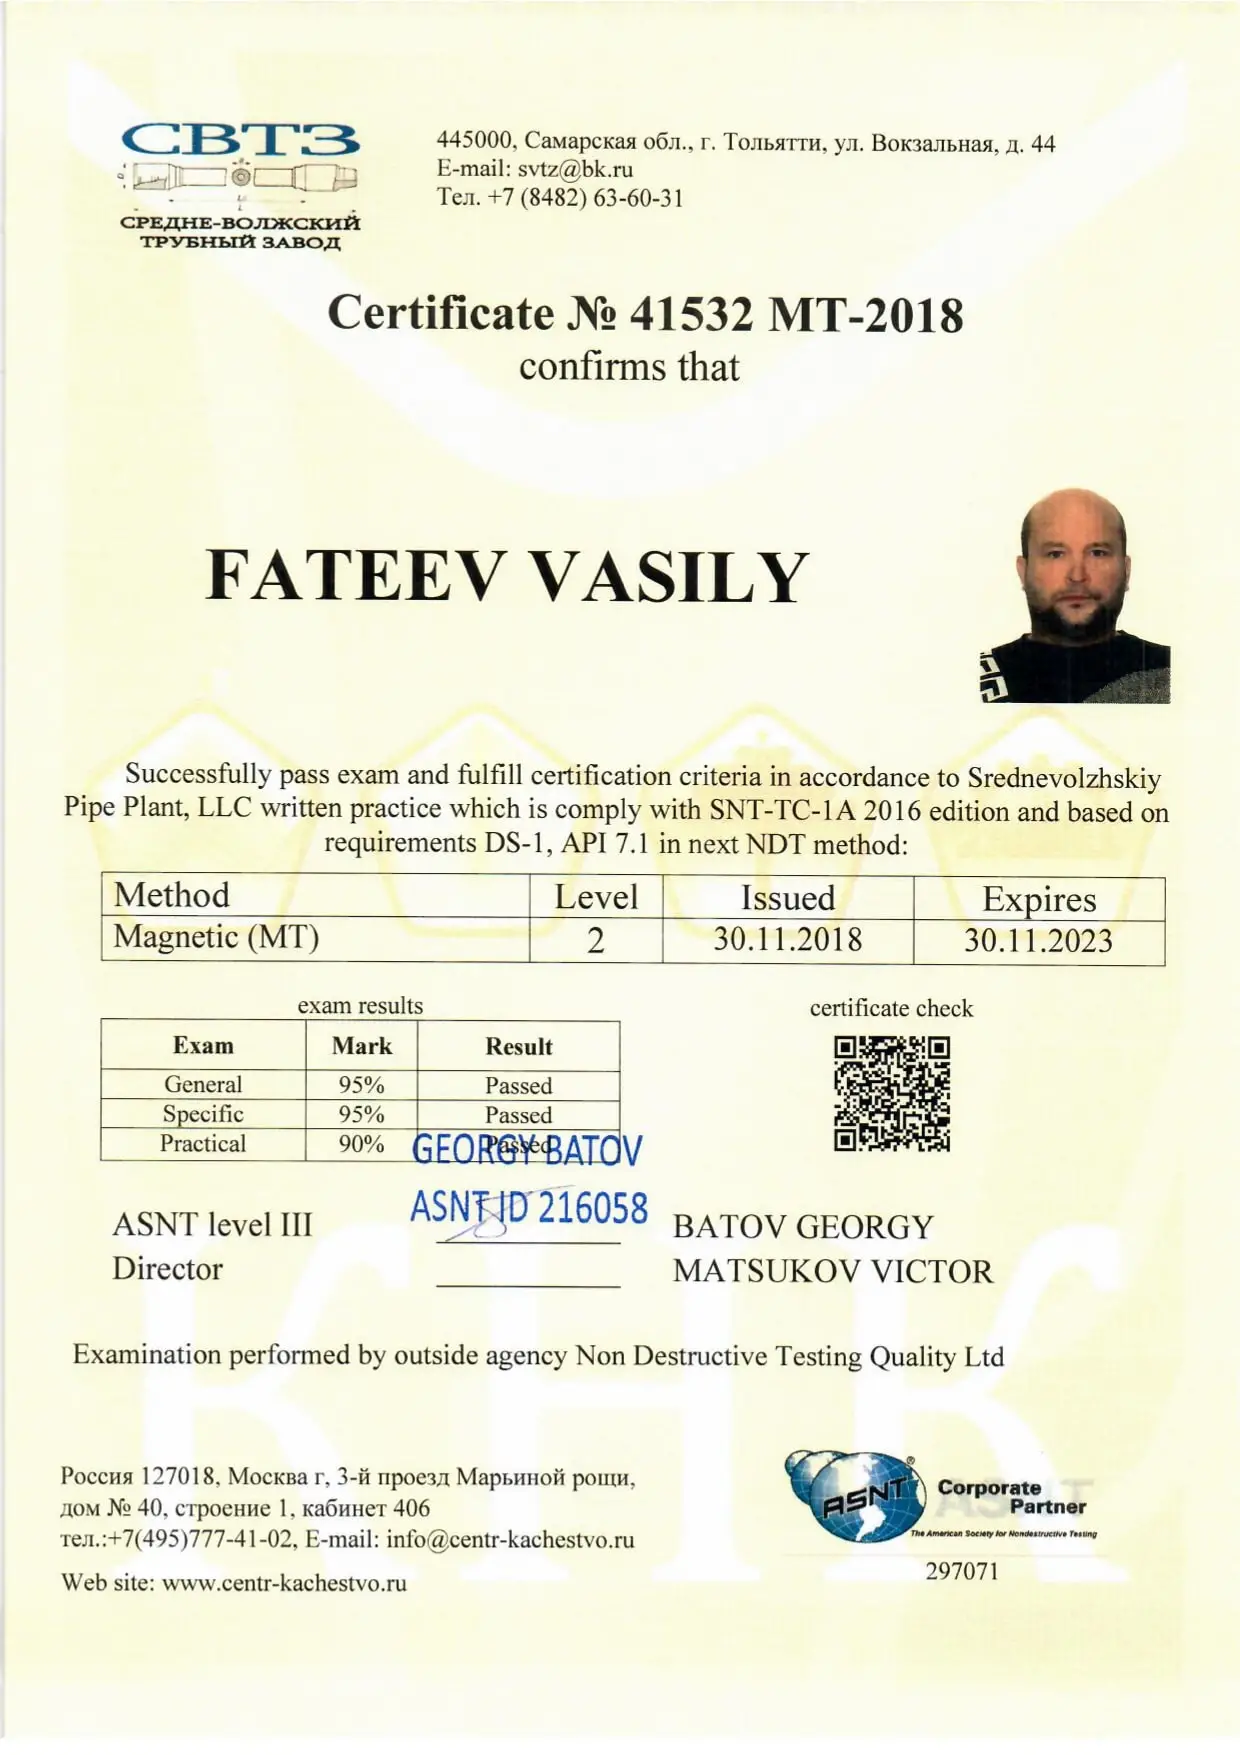 Фатеев сертификат 2